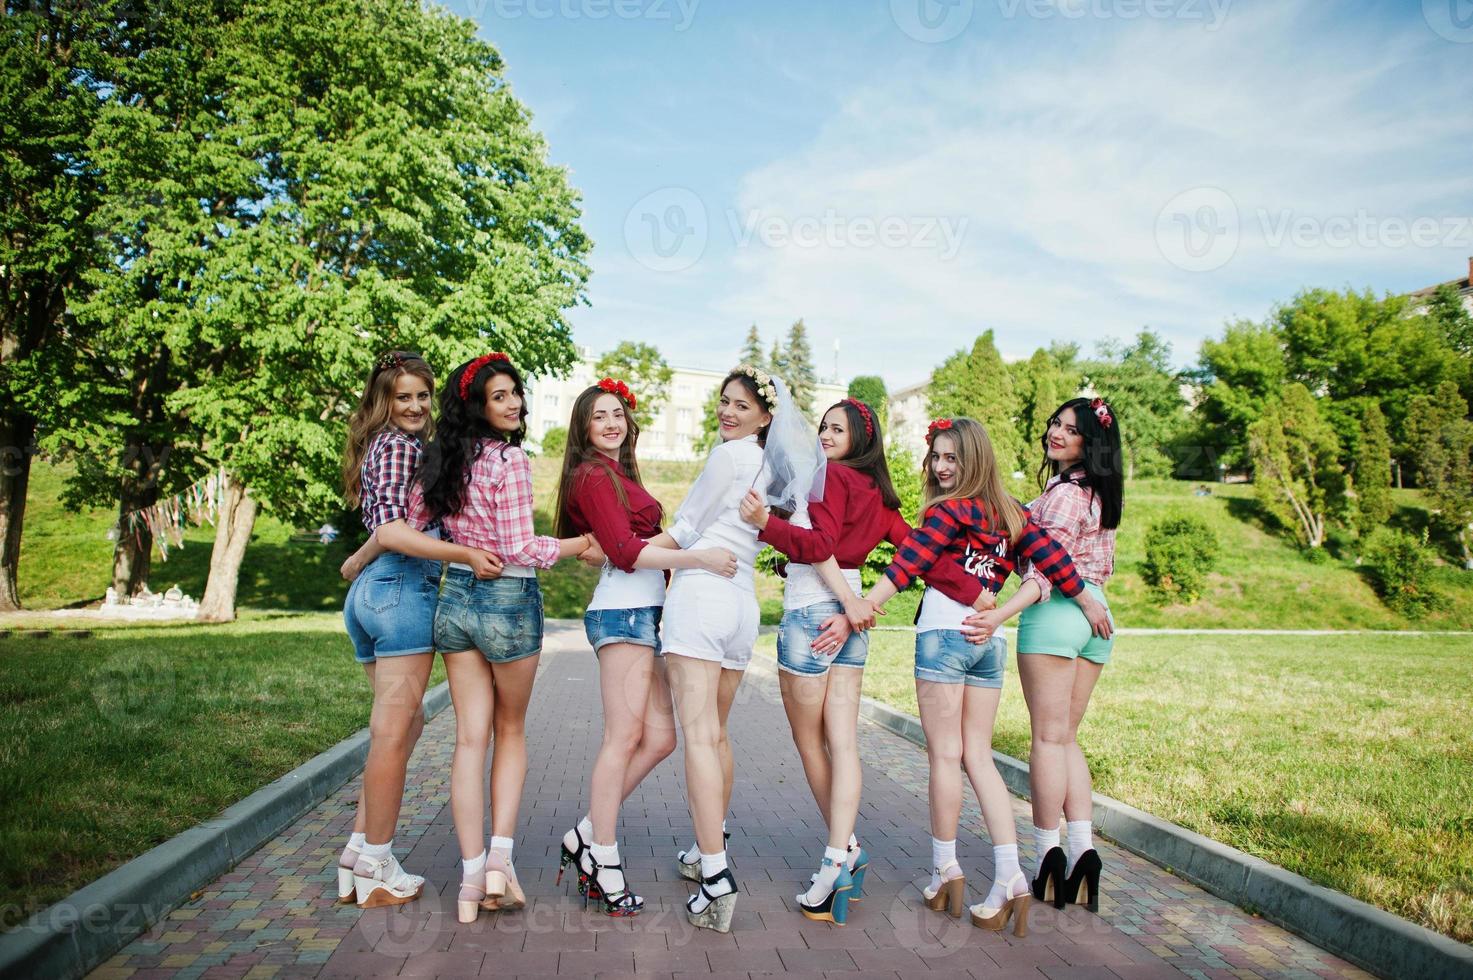 vista traseira de sete garotas felizes e sexy em shorts curtos de mãos dadas nas nádegas e posaram na estrada no parque na despedida de solteira foto